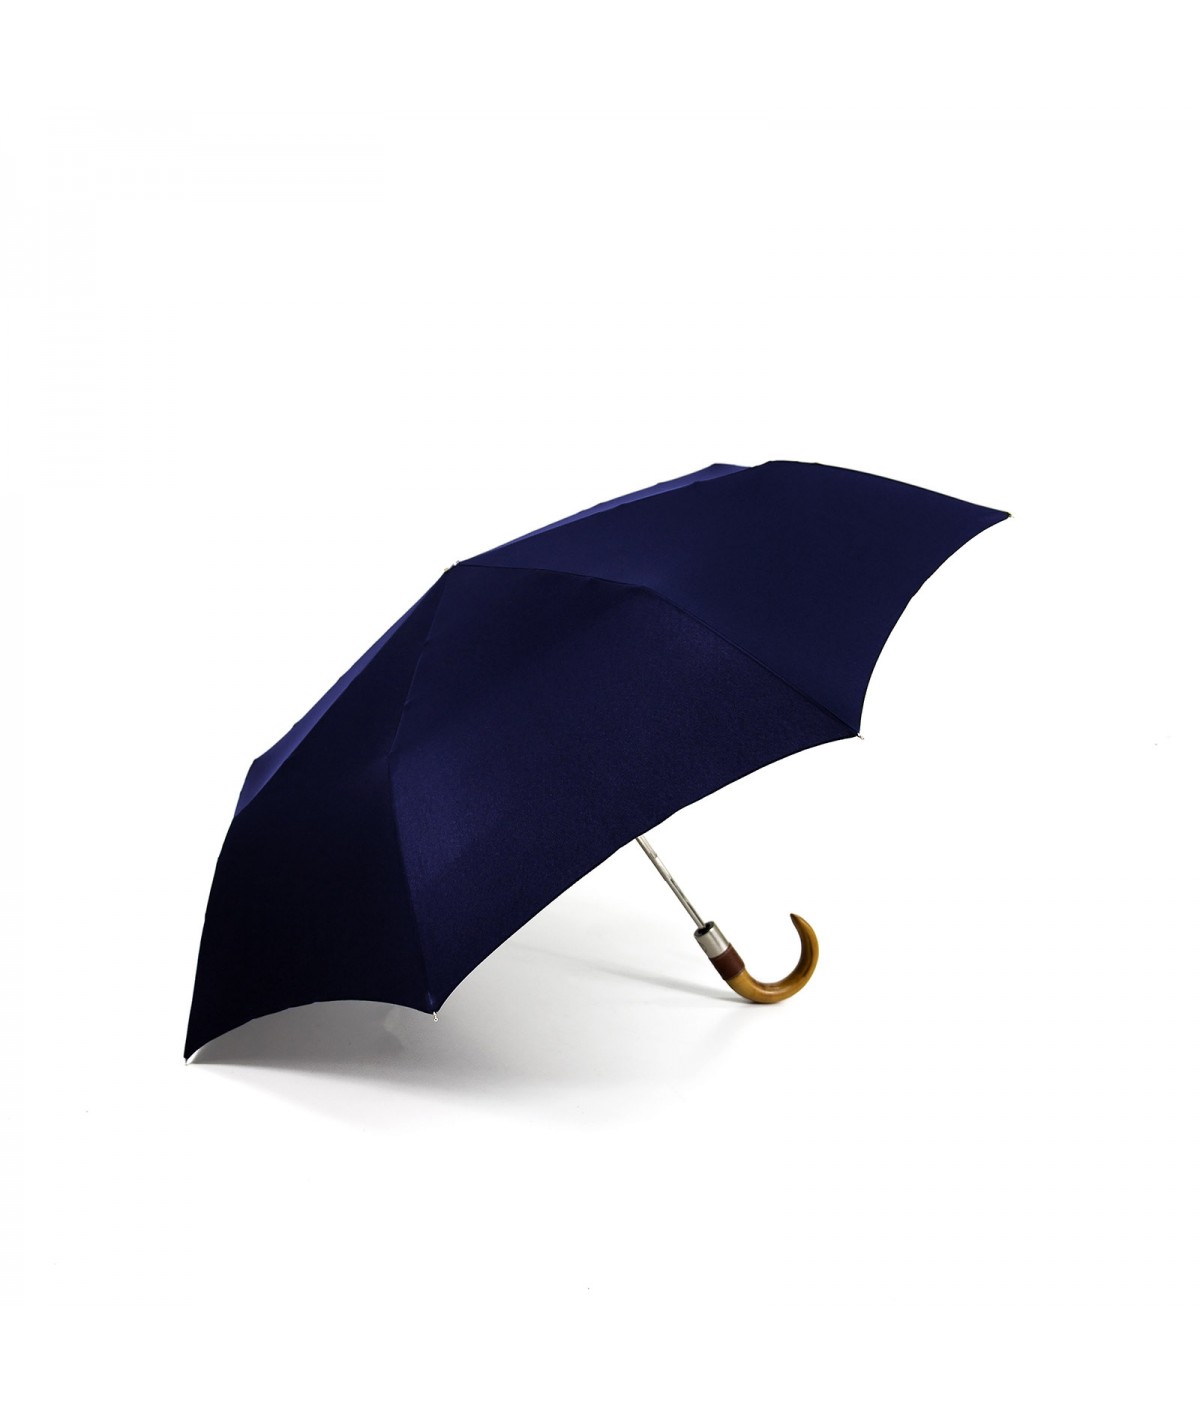 → Longchamp - "Men's Umbrella" Navy - Mini Automatic - by the French Umbrellas Manufacturer Maison Pierre Vaux